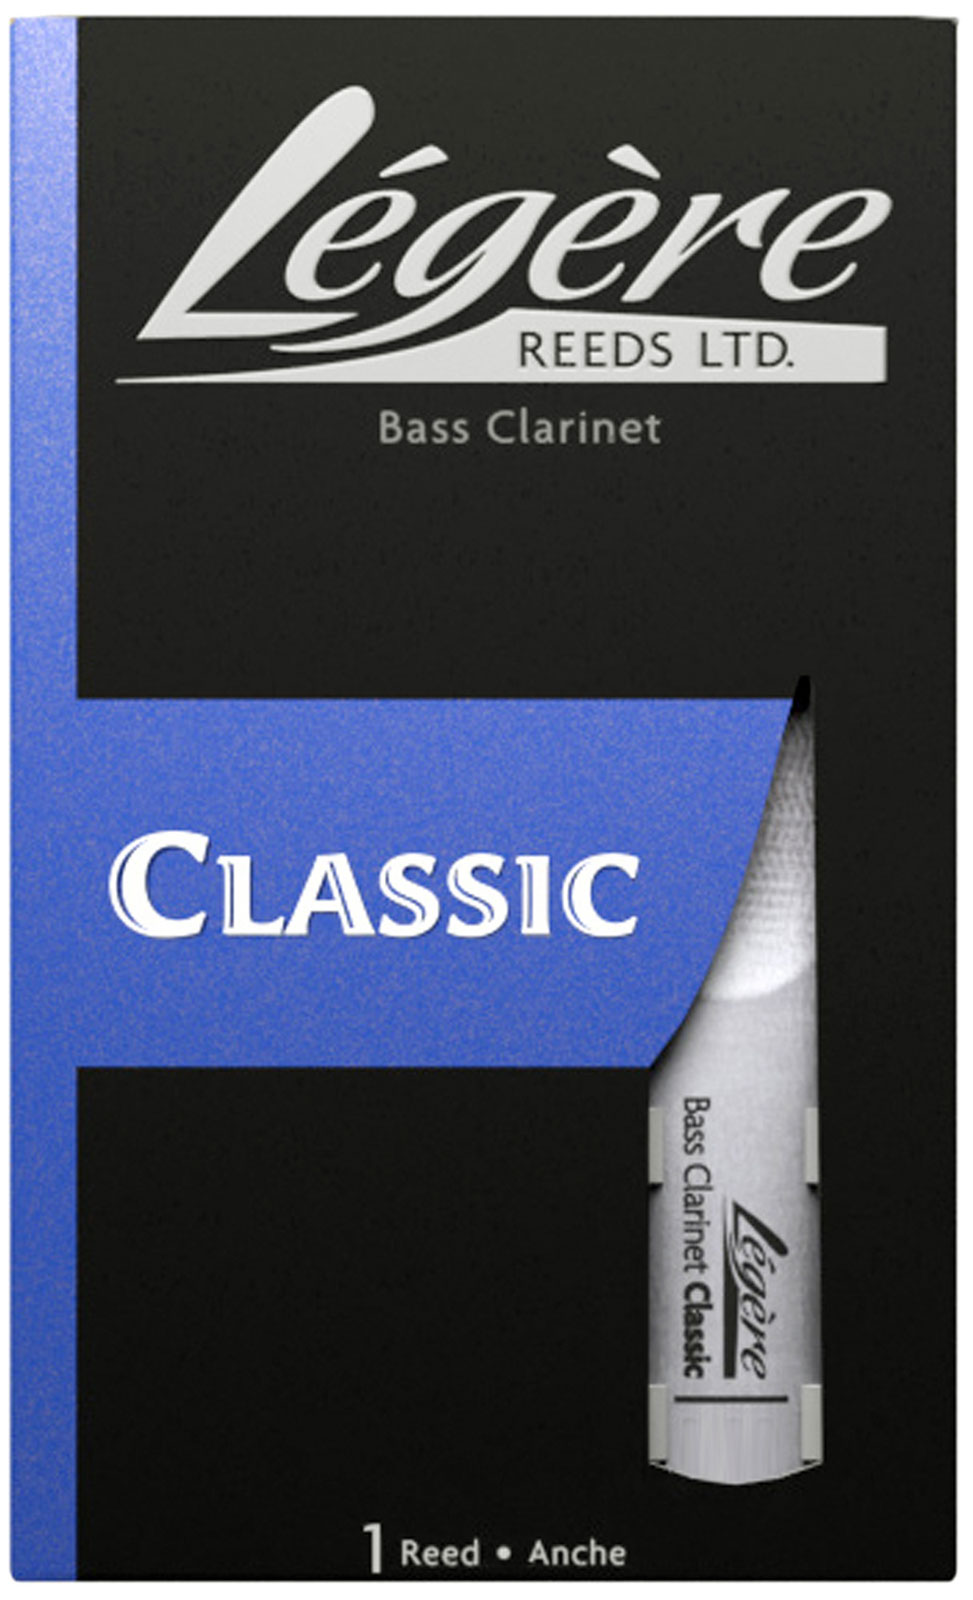 LEGERE CLASSIC 2.5 - CLAR BASSE